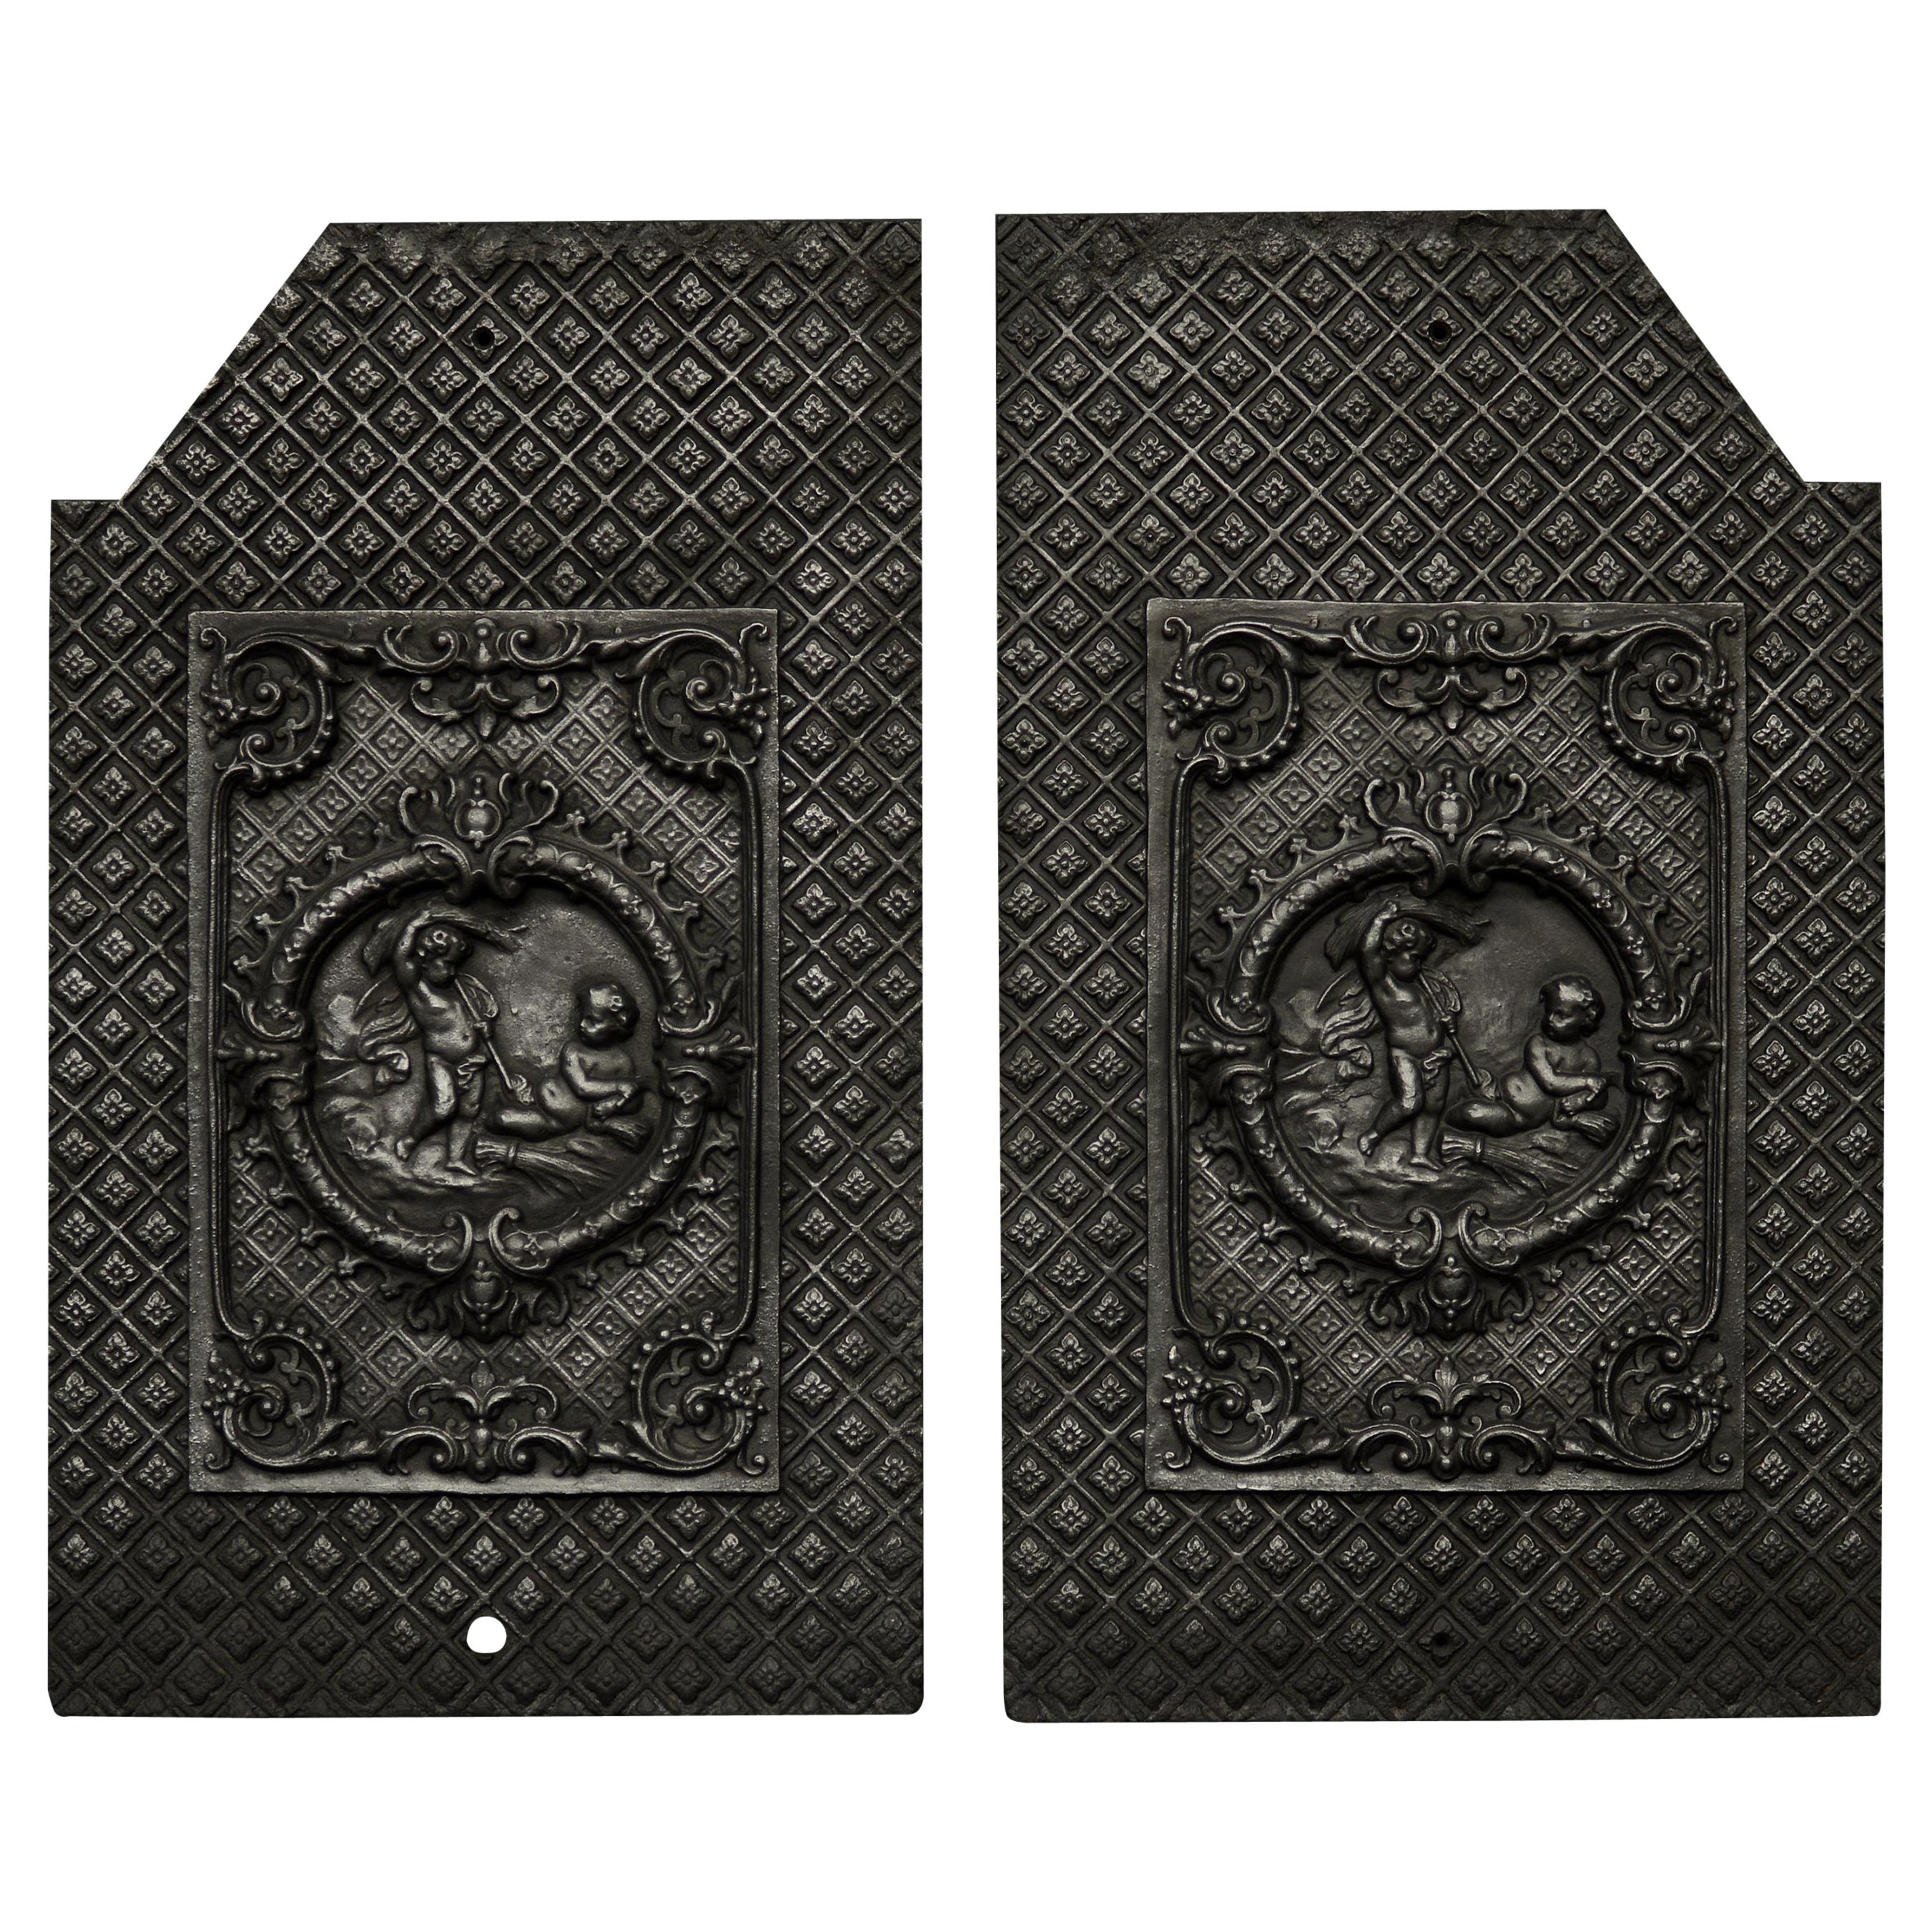 Dekoratives Paar gusseiserner Kaminplatten für die Innenseite, dekorativ